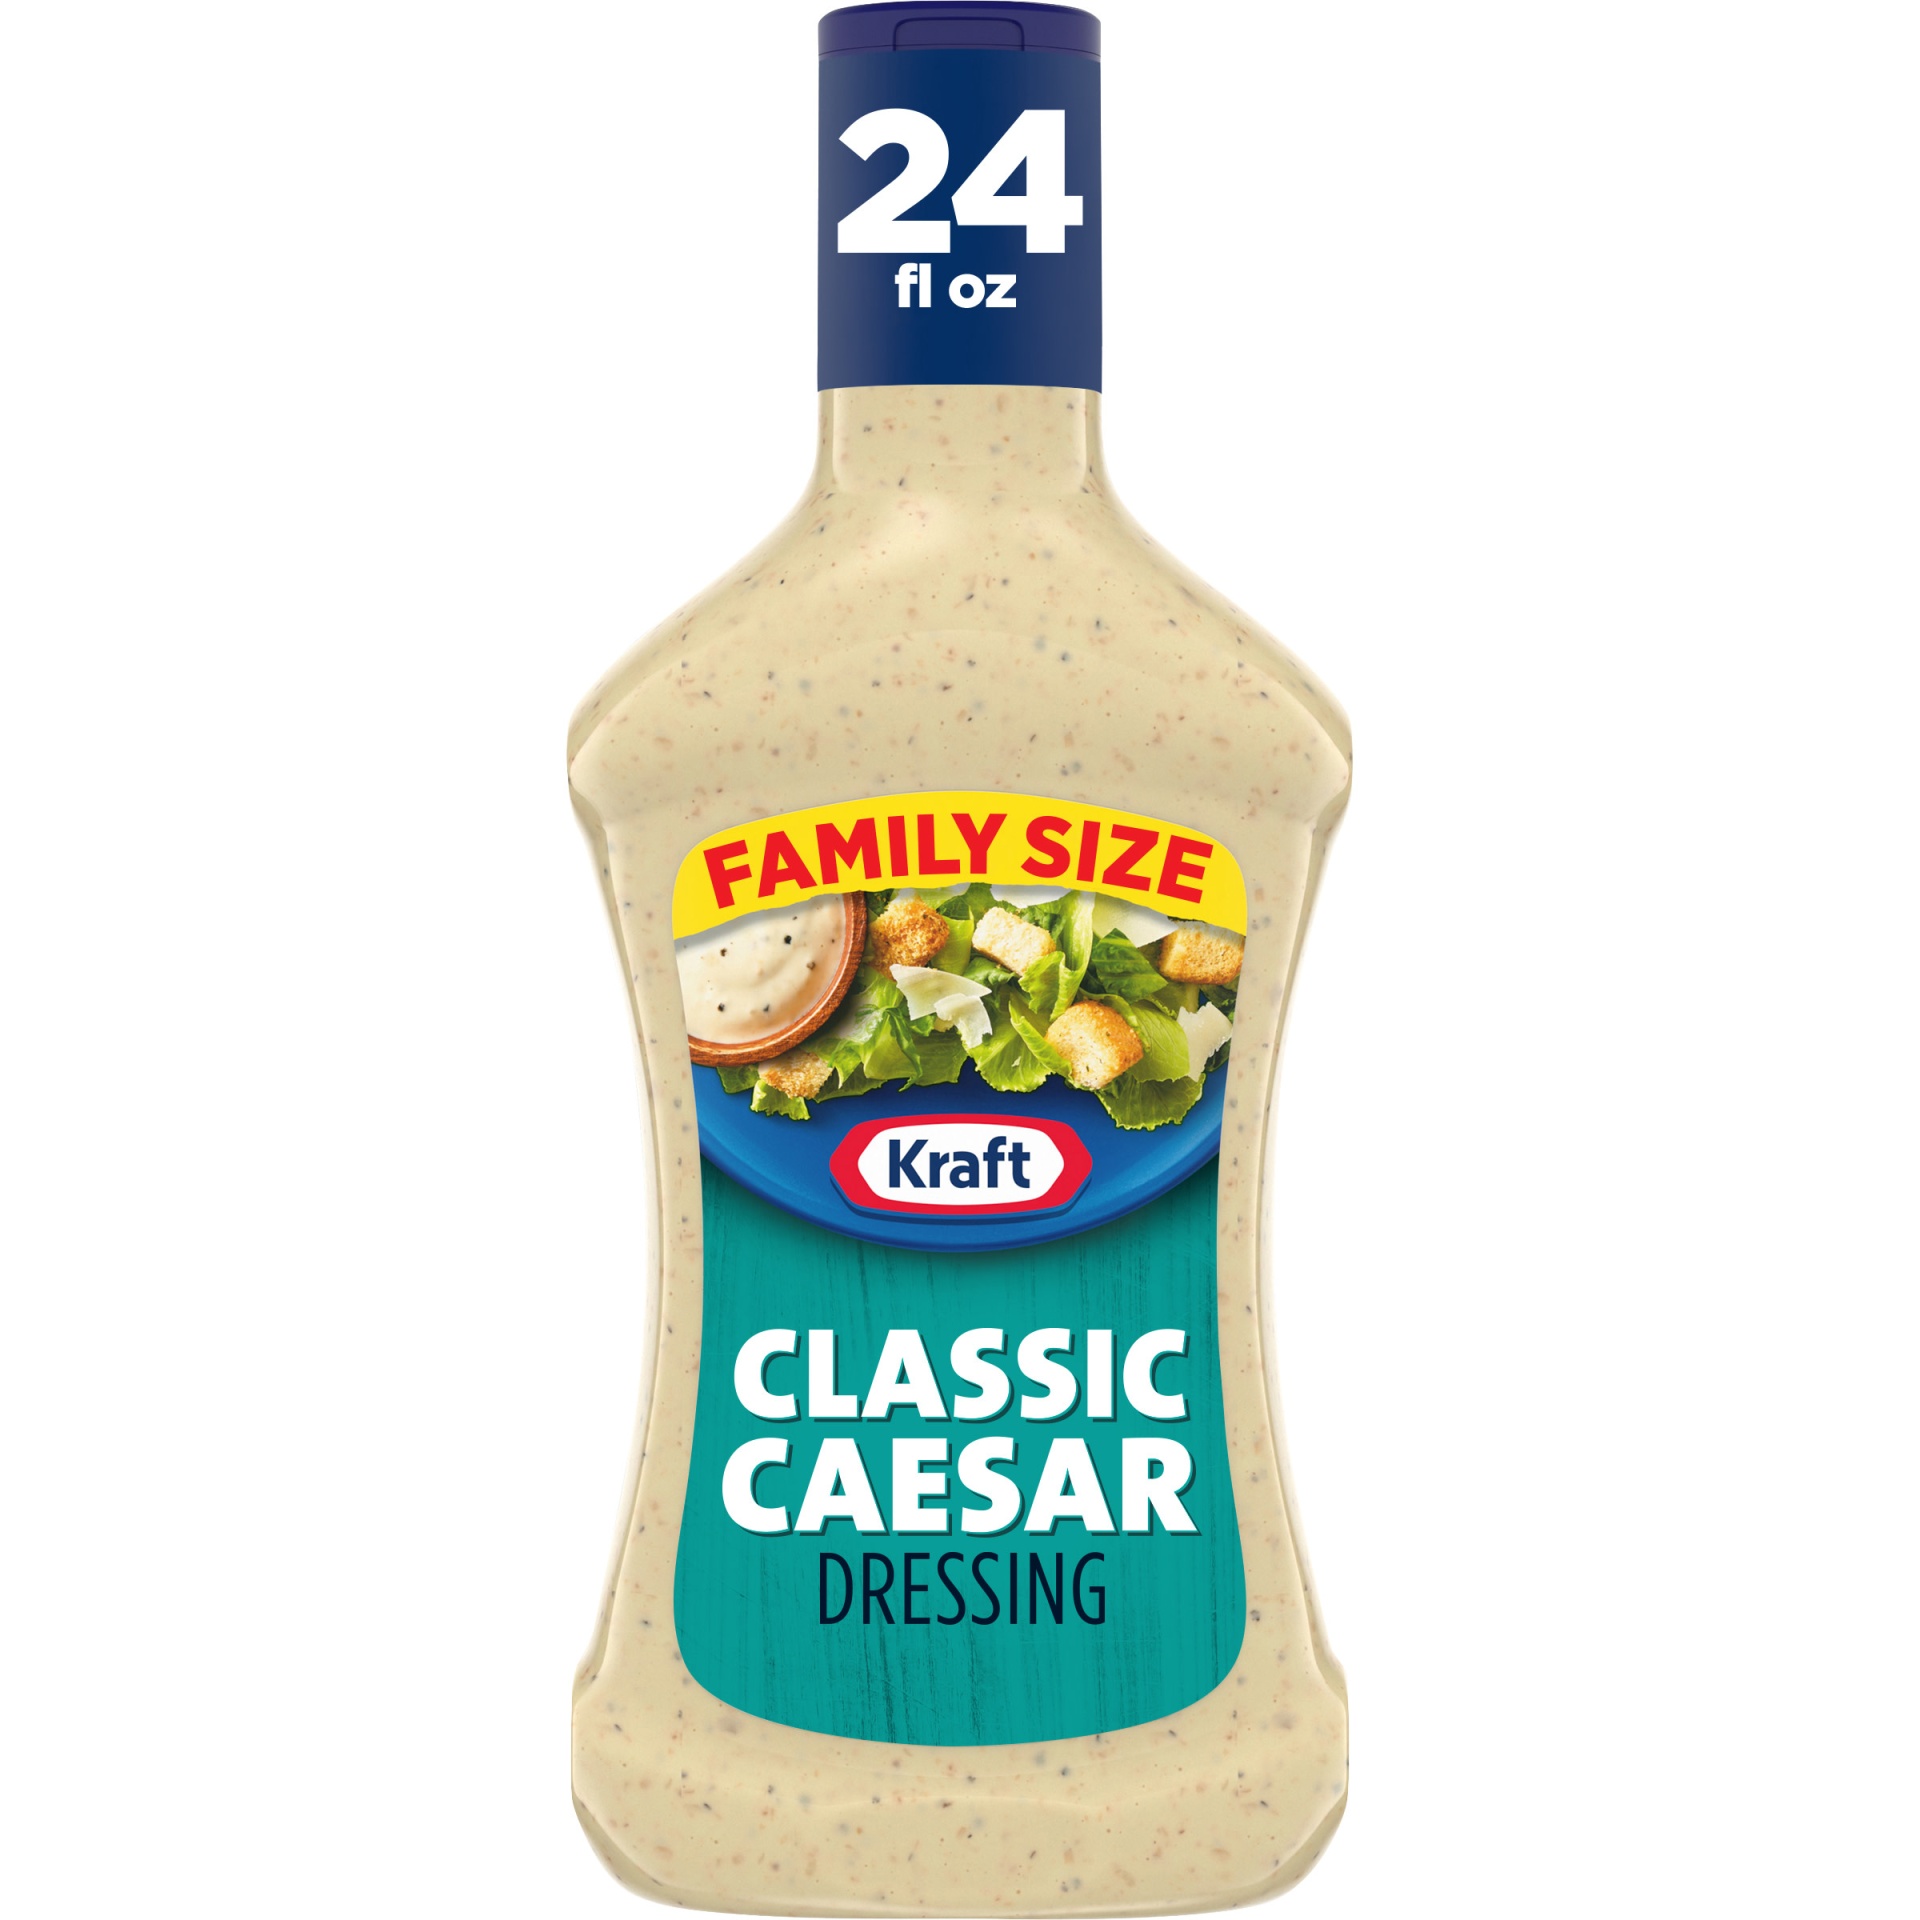 slide 1 of 6, Kraft Classic Caesar Salad Dressing Family Size Bottle, 24 fl oz